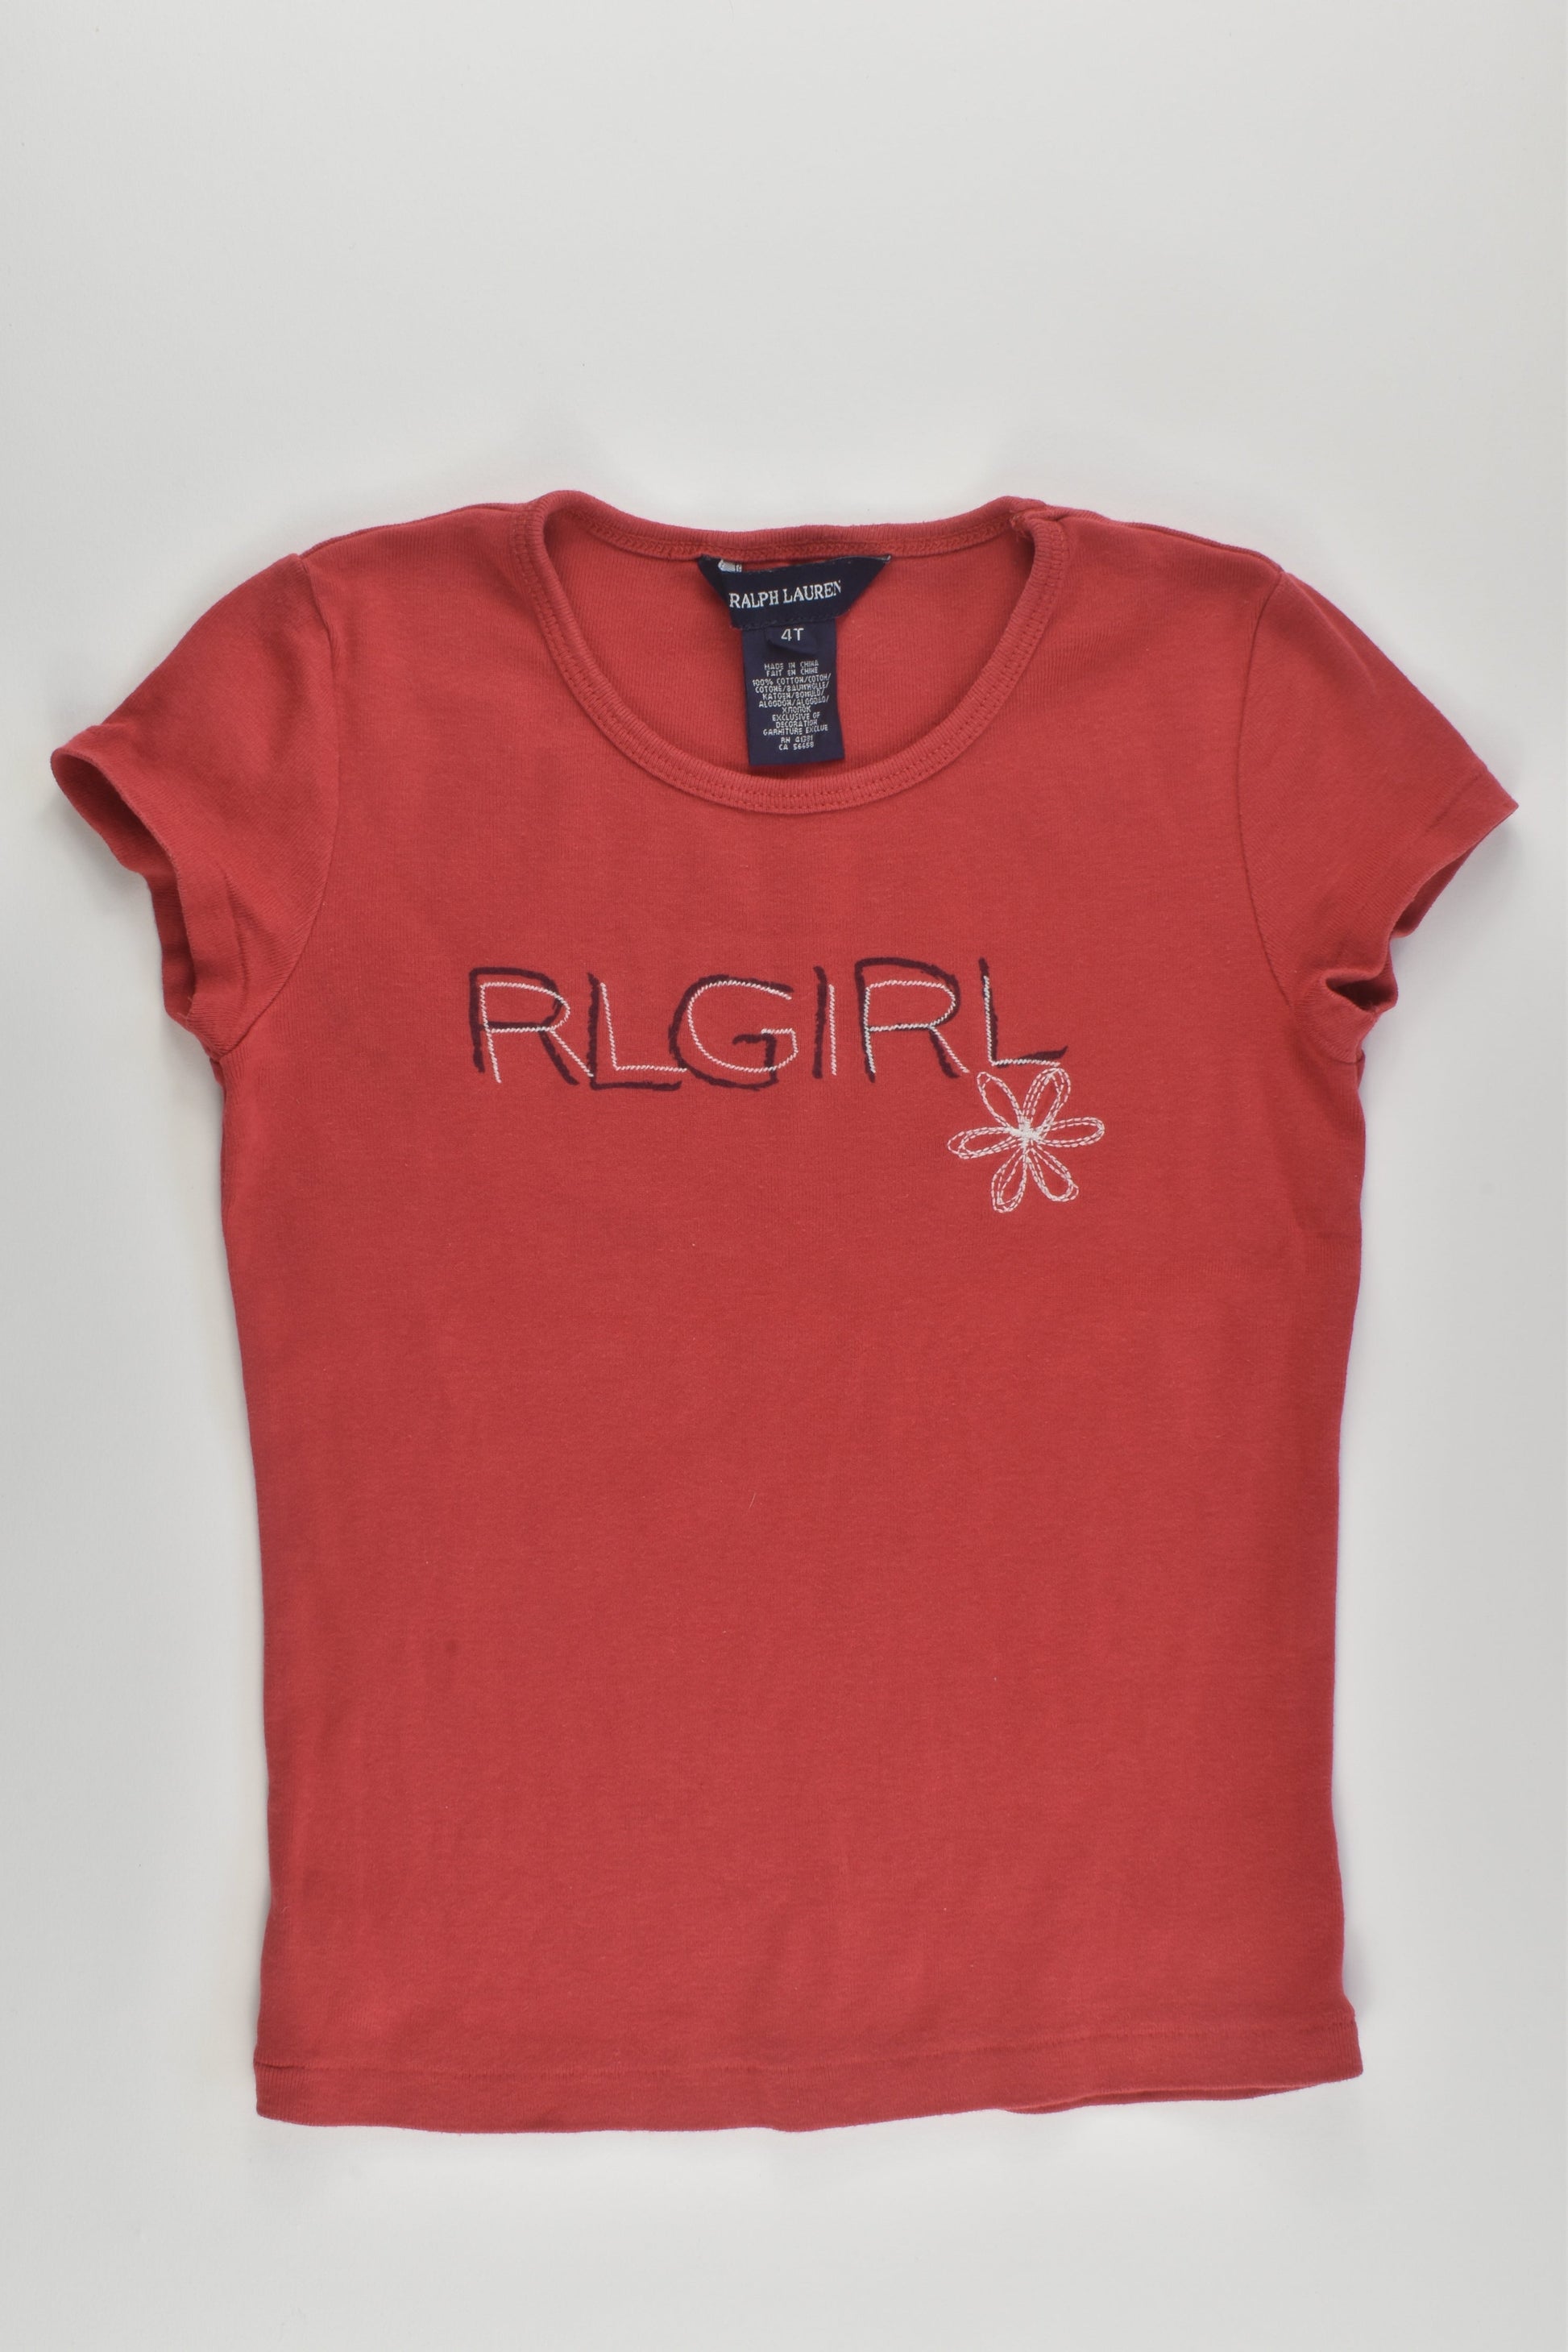 Ralph Lauren Size 4 T-shirt